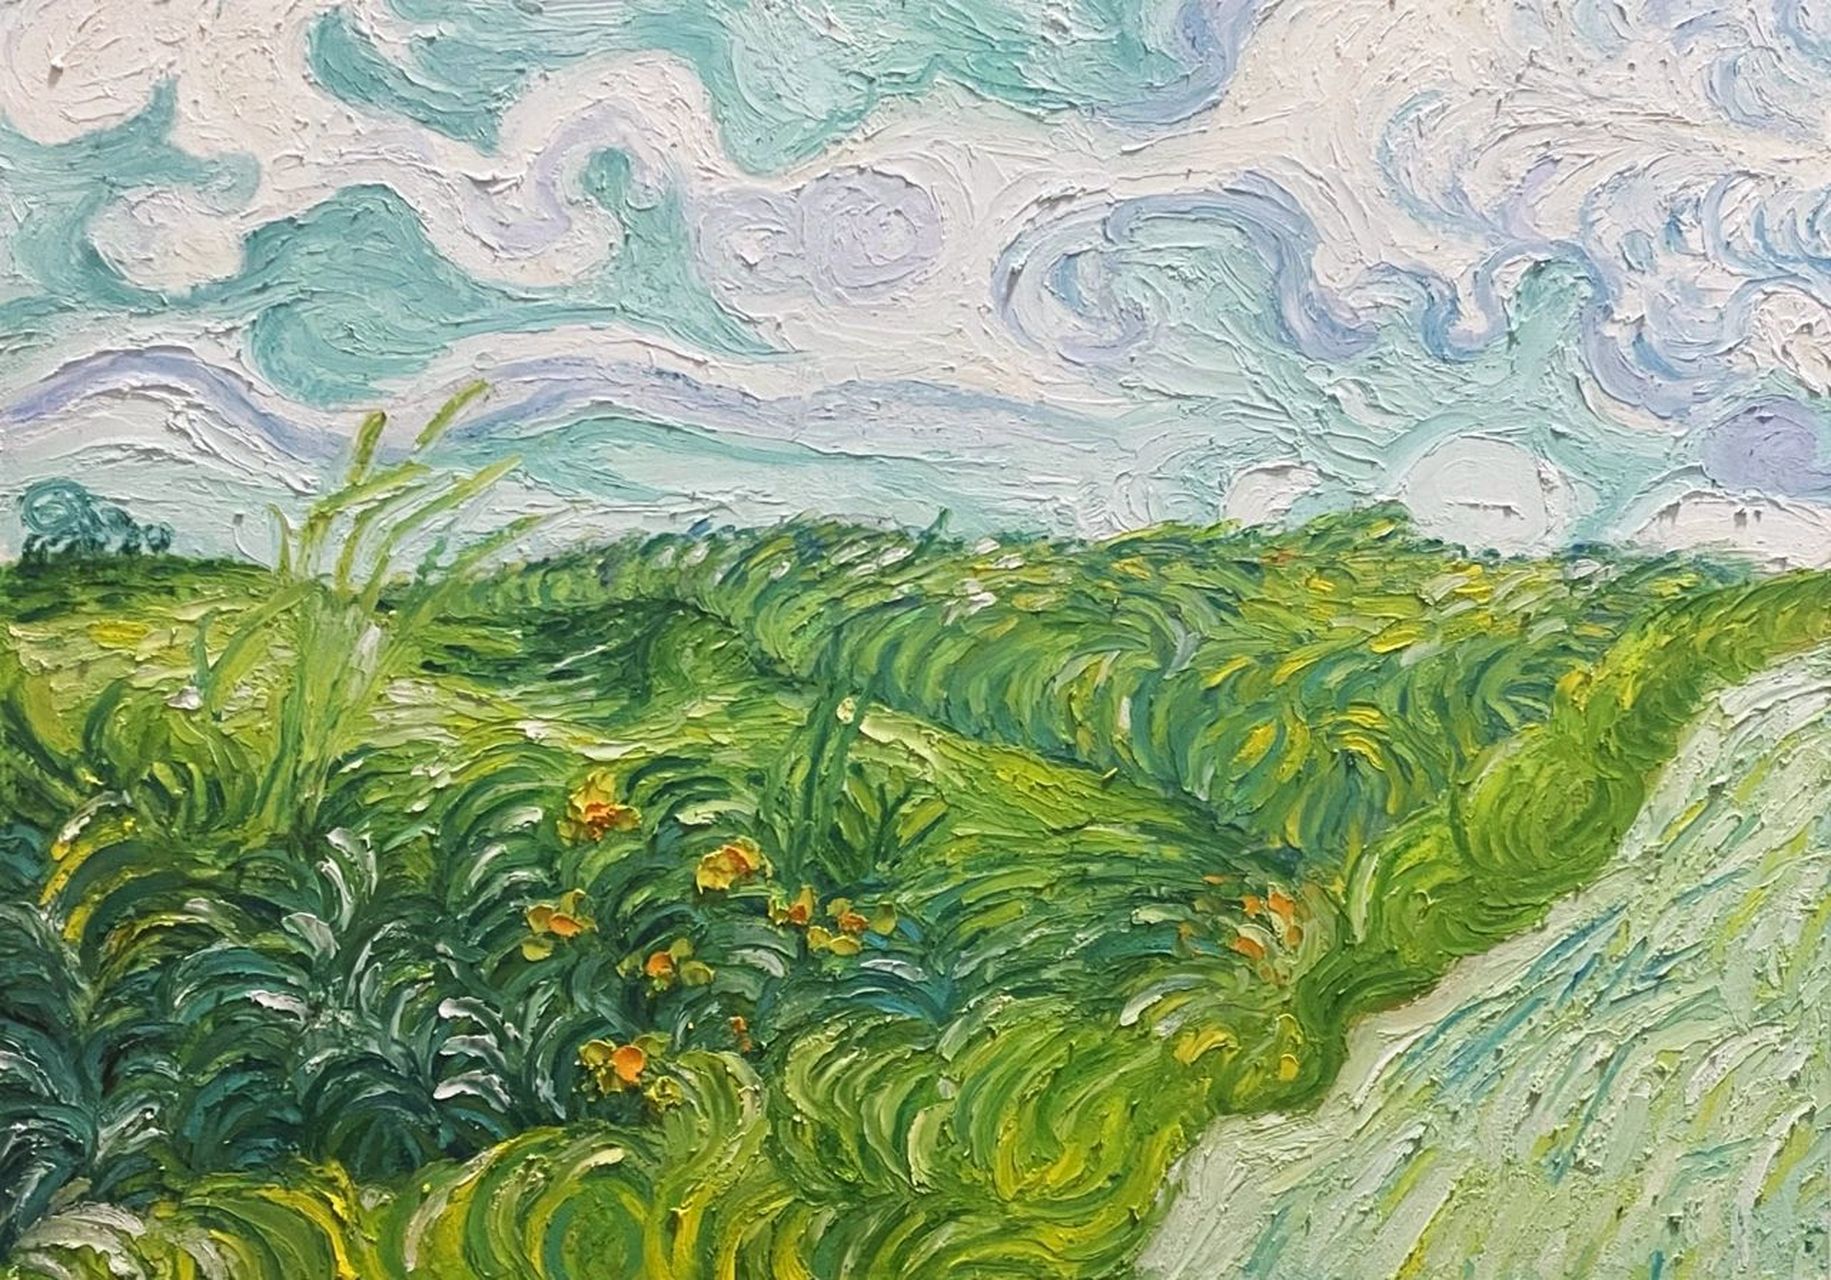 重彩油画棒:梵高《奥维尔的绿色麦田》 临摹感受梵高的笔触,一大片